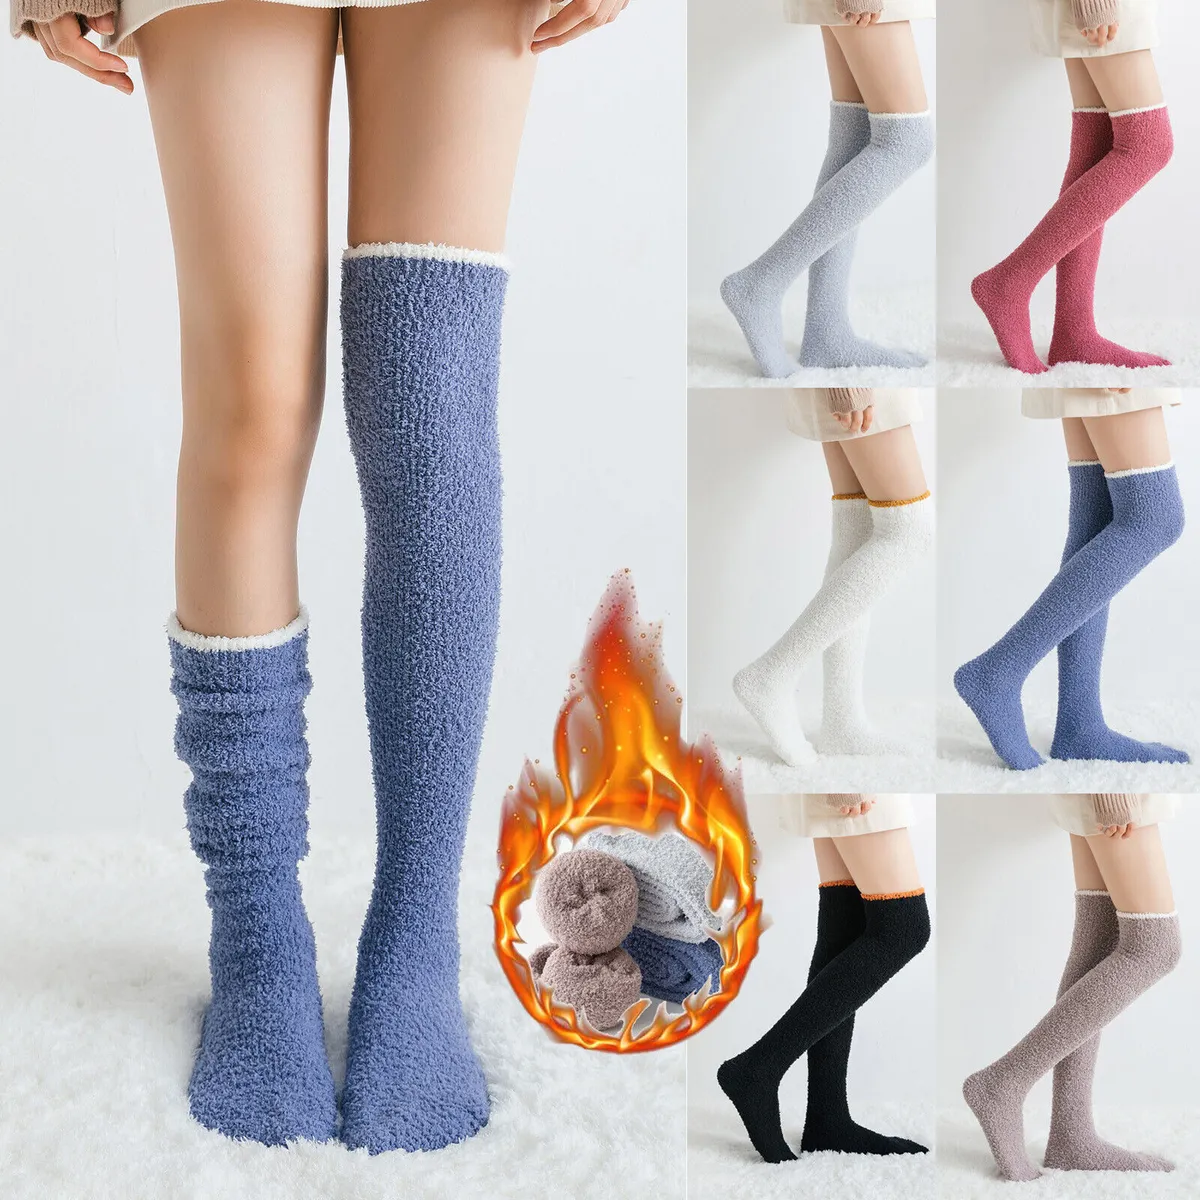 basant adhikari recommends cheer knee high socks pic